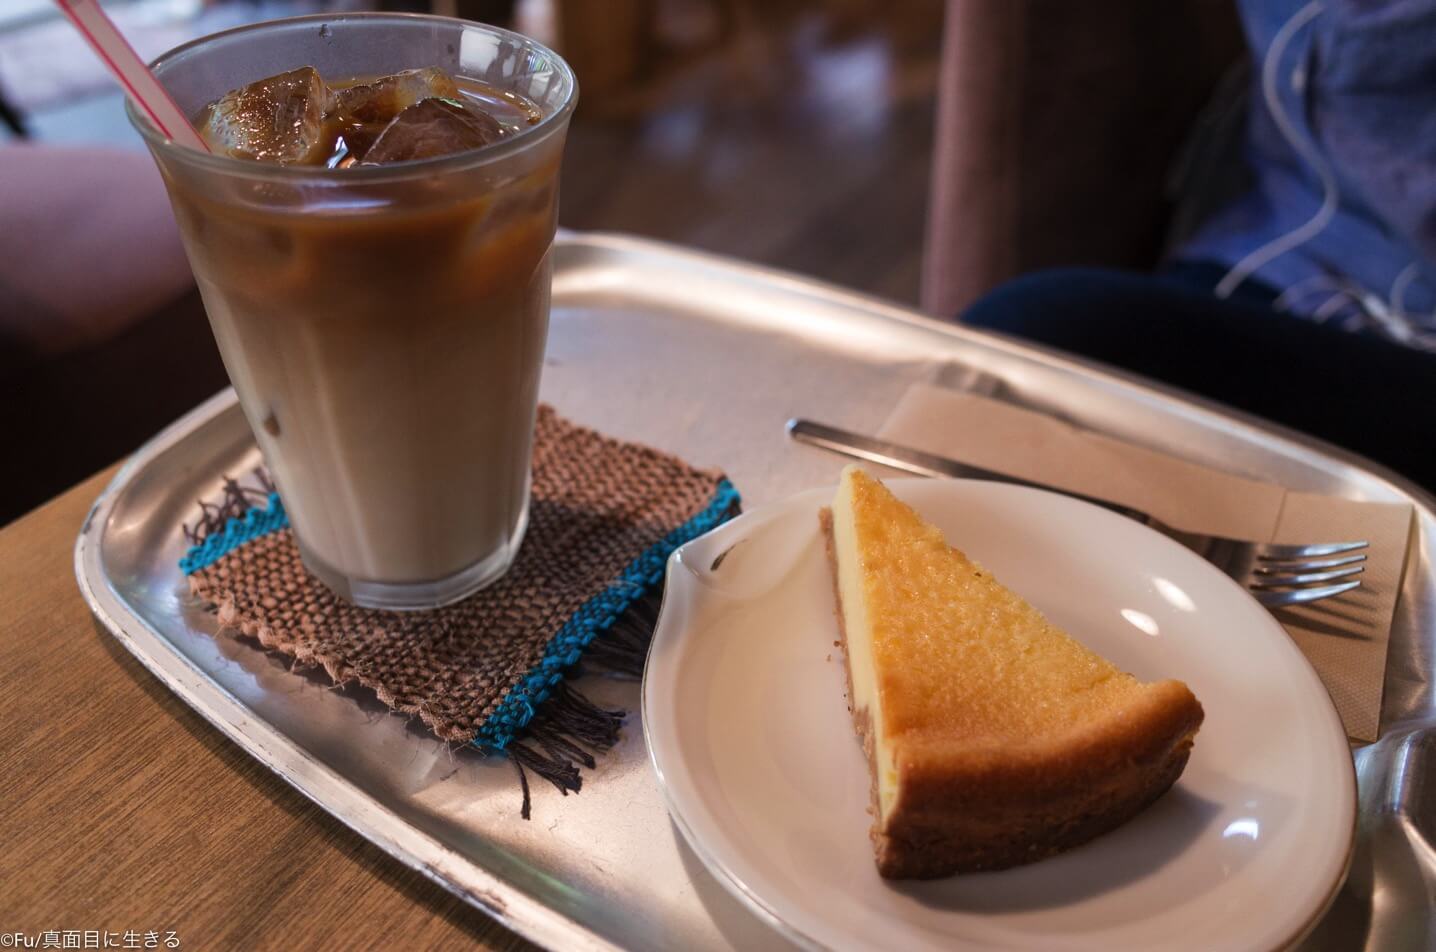 中野坂上の古民家カフェ「モモガルテン」大人のデートにオススメな隠れ家カフェ 一番人気はチーズケーキ